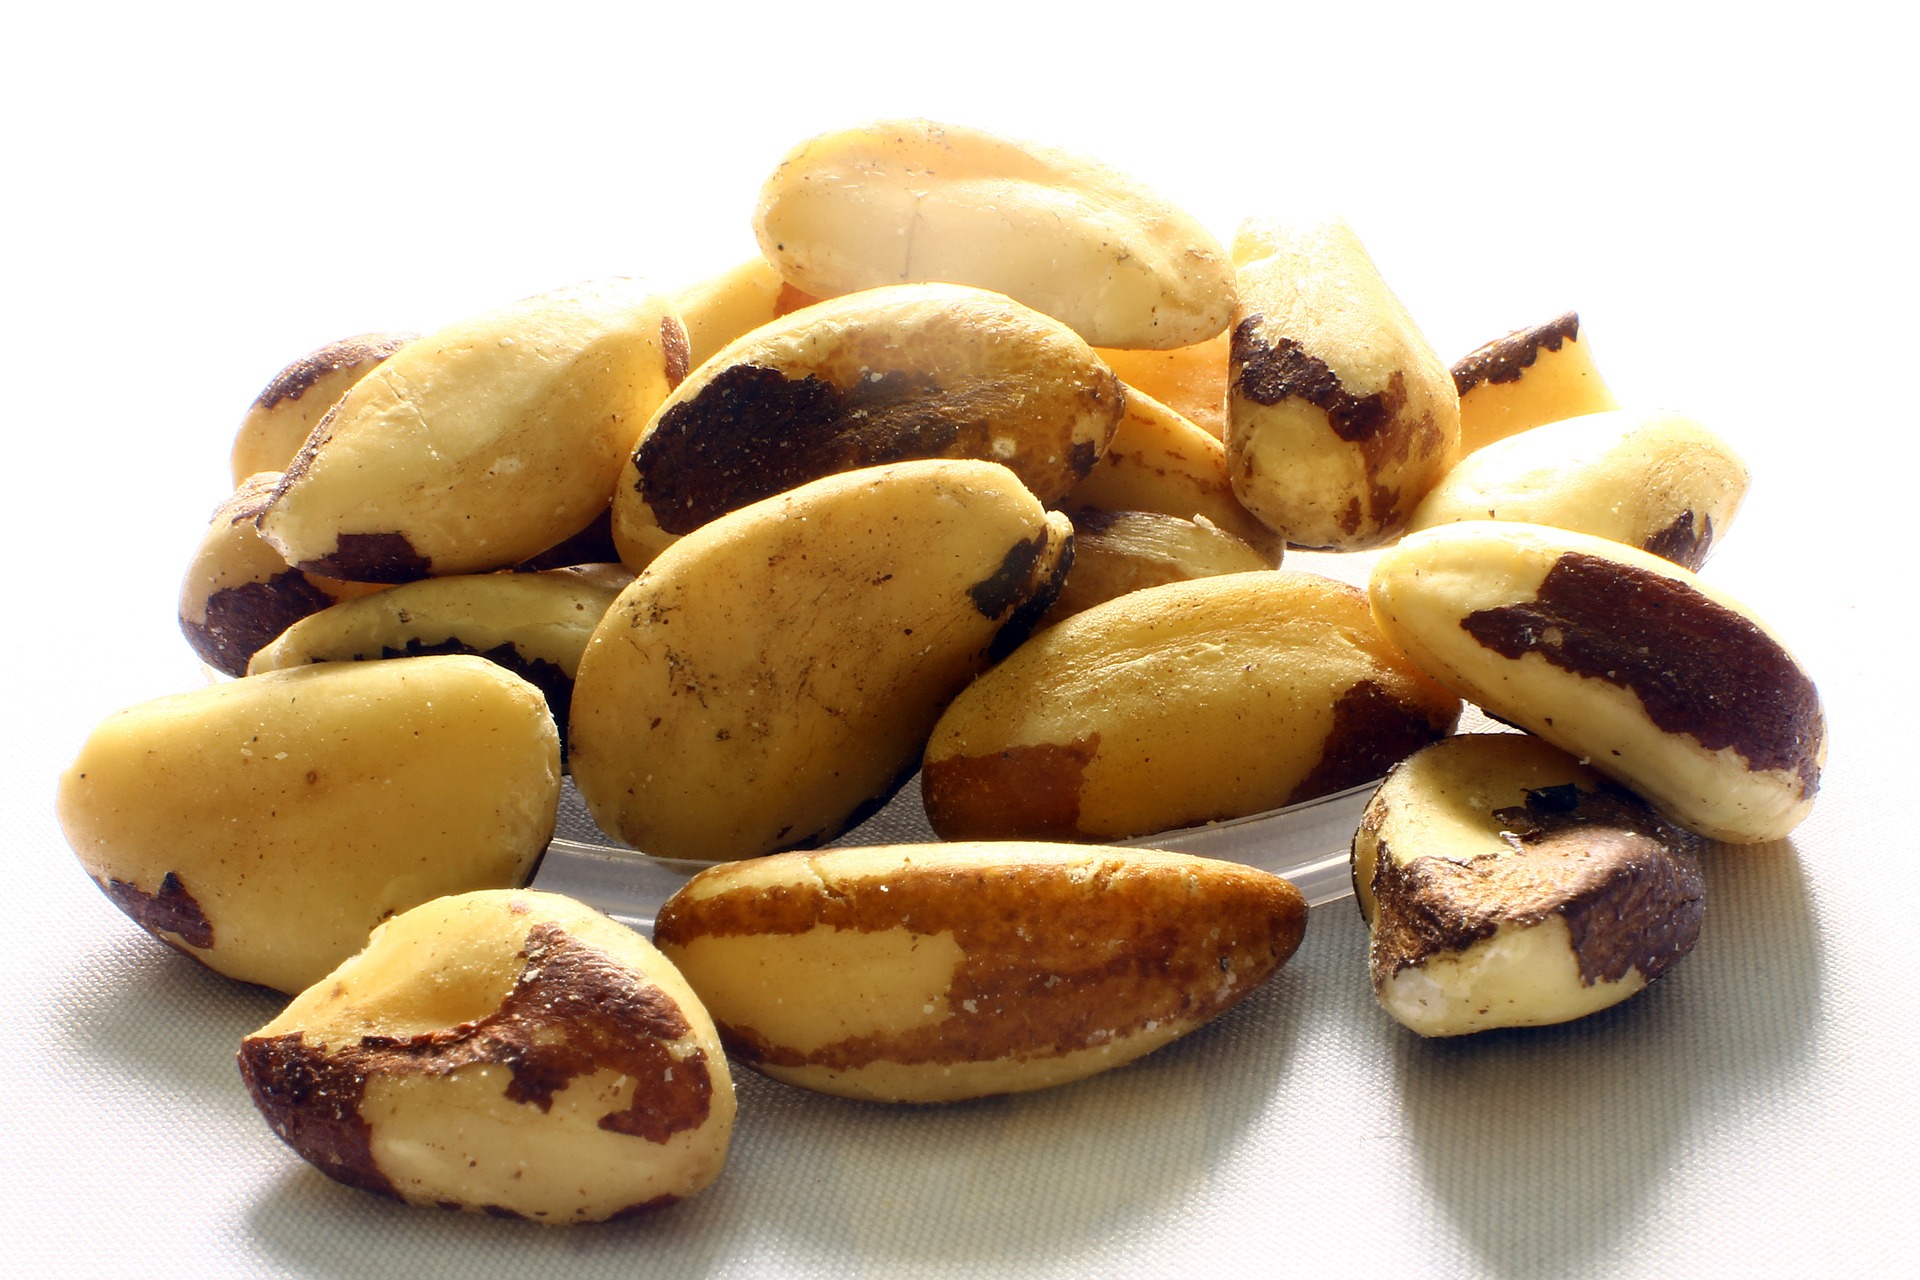 Brazílske orechy, morské plody, ovos a hnedá ryža sú skvelými zdrojmi selénu, minerálu na boj proti rakovine. Štúdia publikovaná v časopise Journal of Biological Chemistry zistila, že zlúčeniny selénu posilňujú imunitný systém, čo mu umožňuje bojovať proti určitým typom rakoviny, ako je leukémia a melanóm. Vyvarujte sa však konzumácii mäkkýšov a surových rýb - môžu vás vystaviť vyššiemu riziku chorôb prenášaných potravinami počas liečby. Držte sa sladkovodných rýb, ako je losos a sumec, a vždy sa uistite, že sú úplne uvarené.